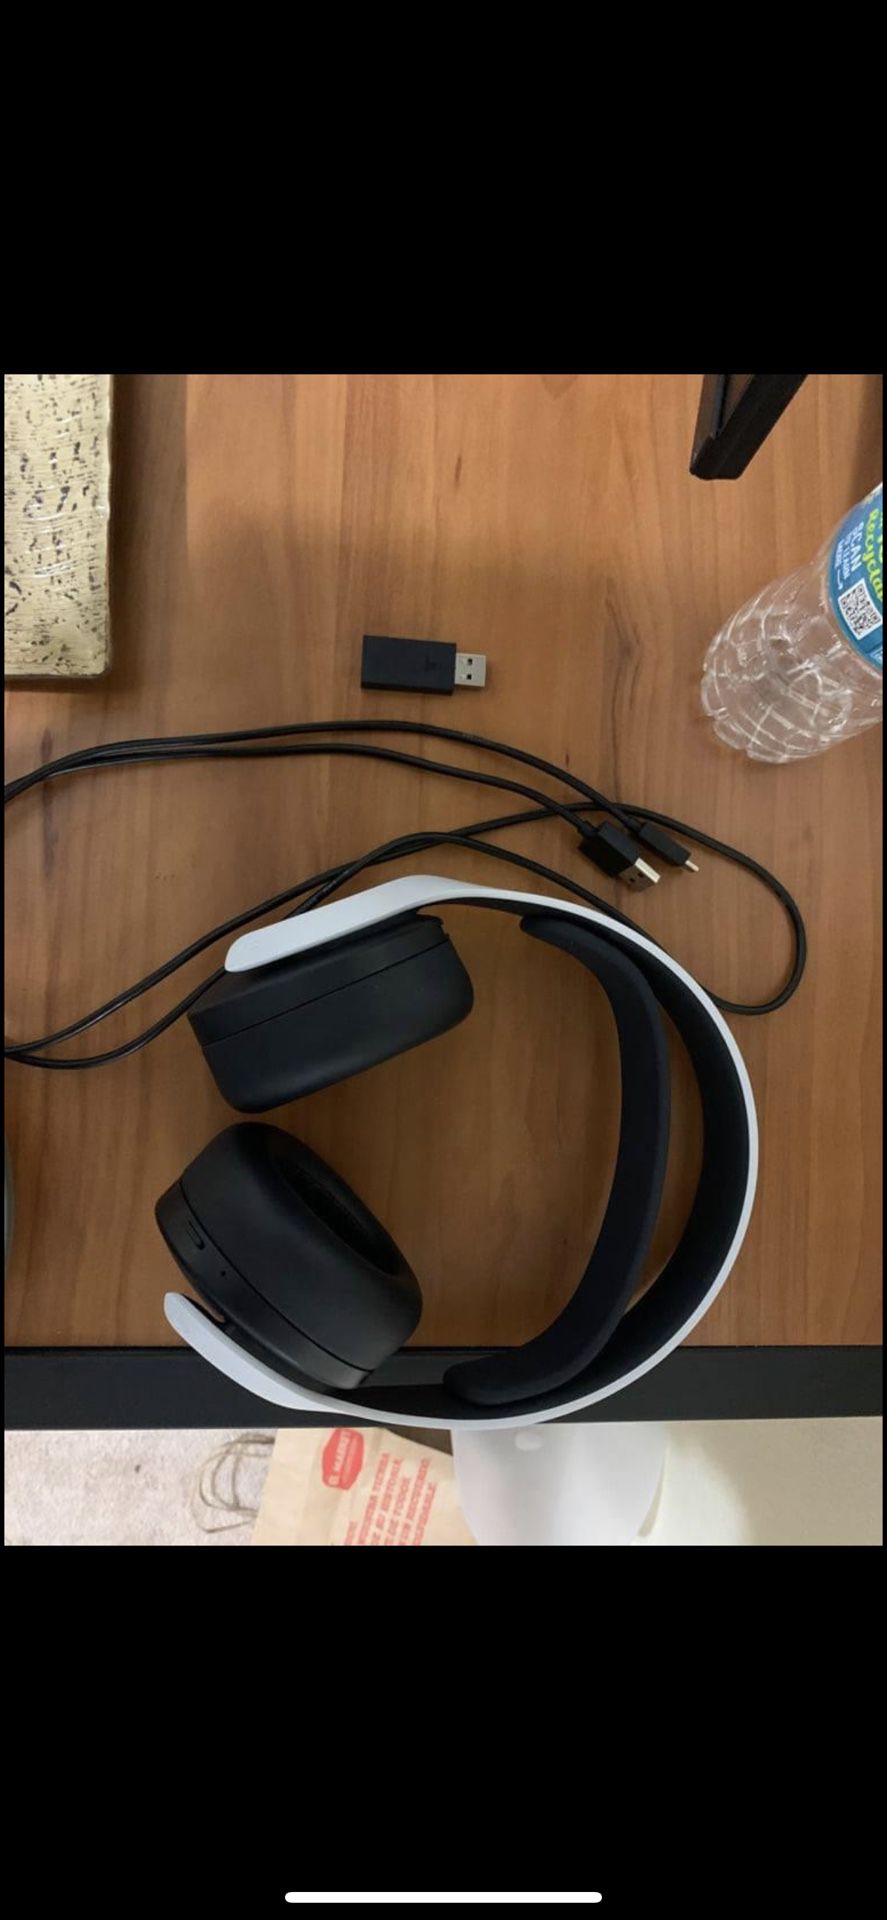 Pulse 3D Wireless Headset 